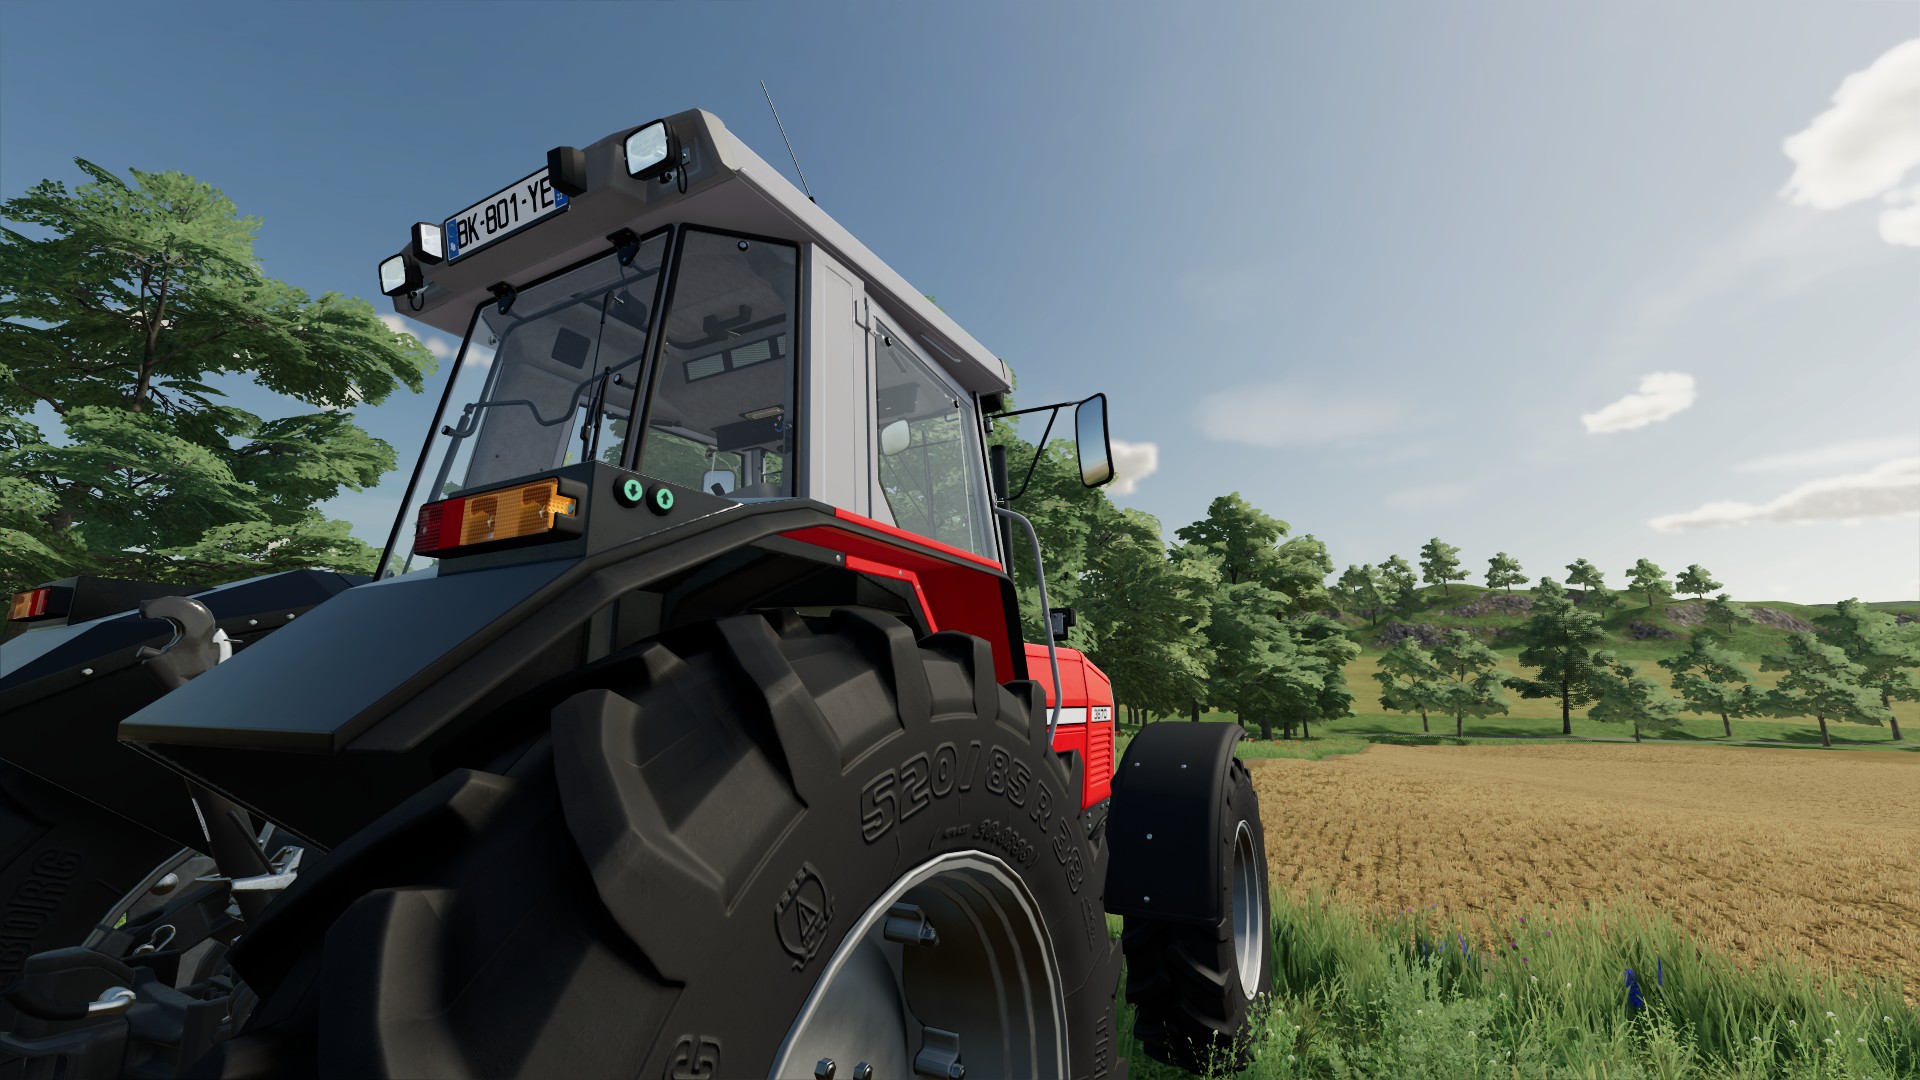 Farming Simulator 22 review - Greener pastures ahead